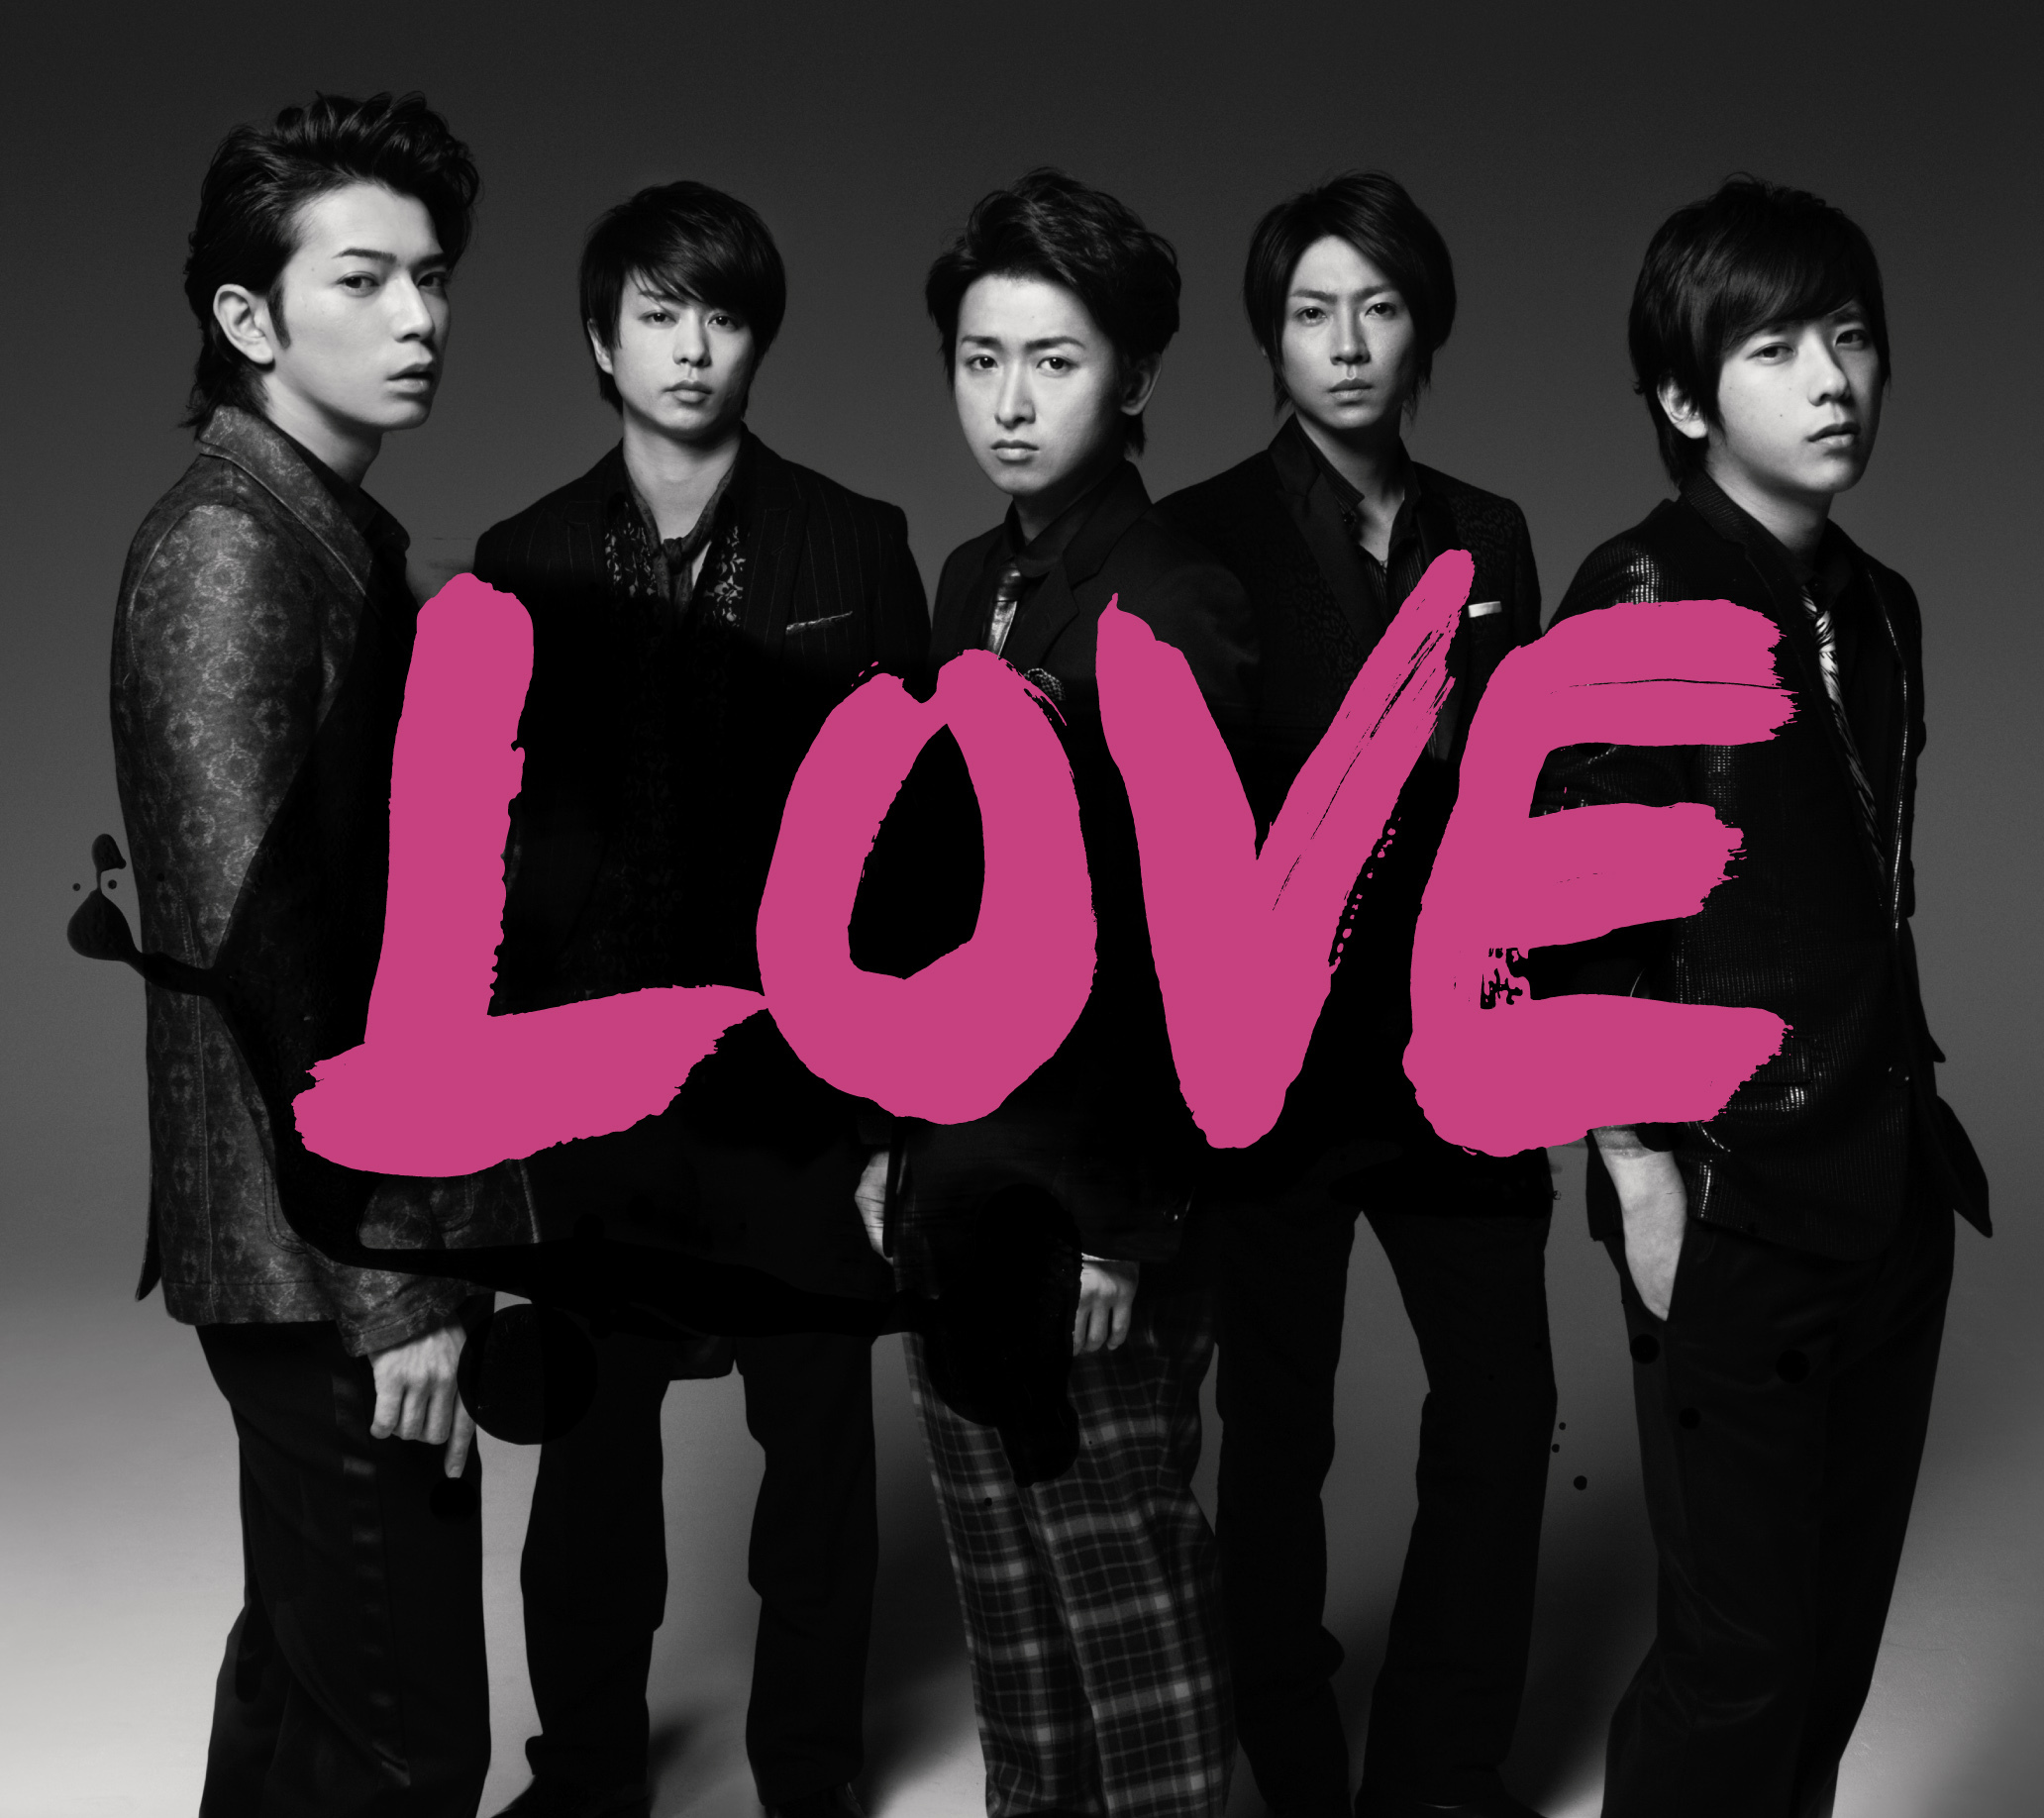 嵐 (あらし) 12thアルバム『LOVE (ラブ)』(2013年10月23日発売) 高画質